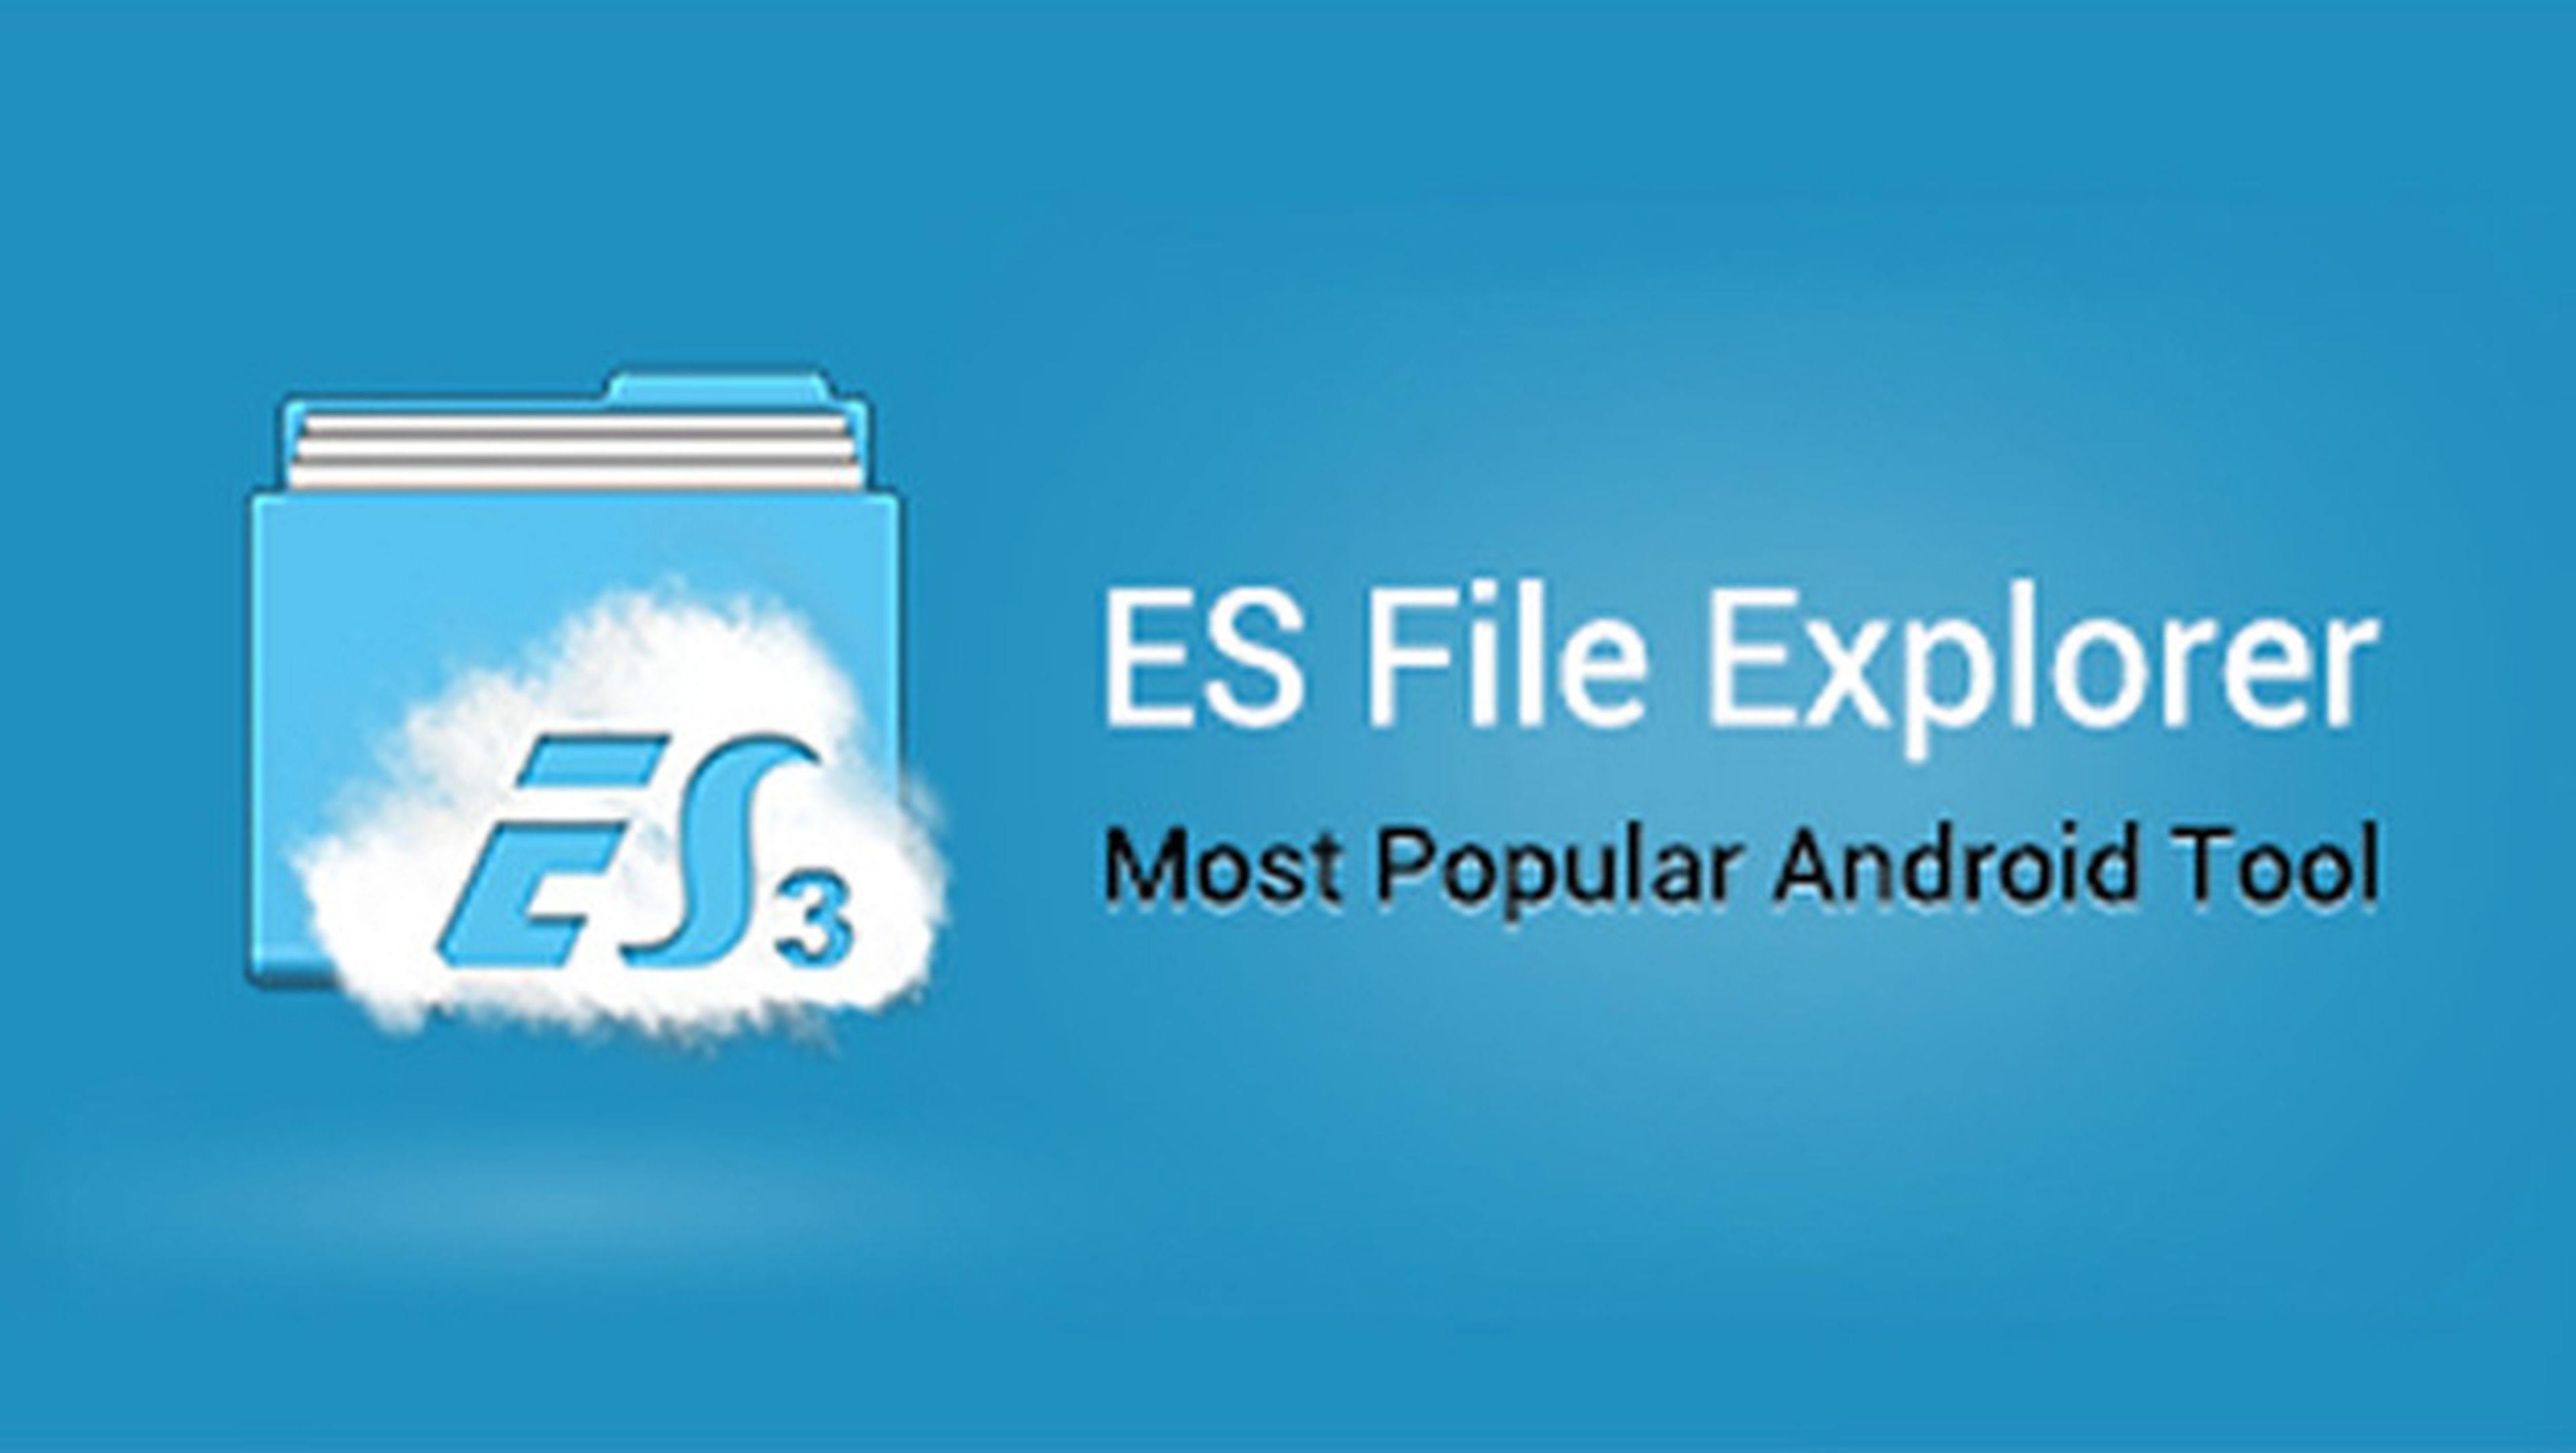 ES File Explorer gratis para tu android